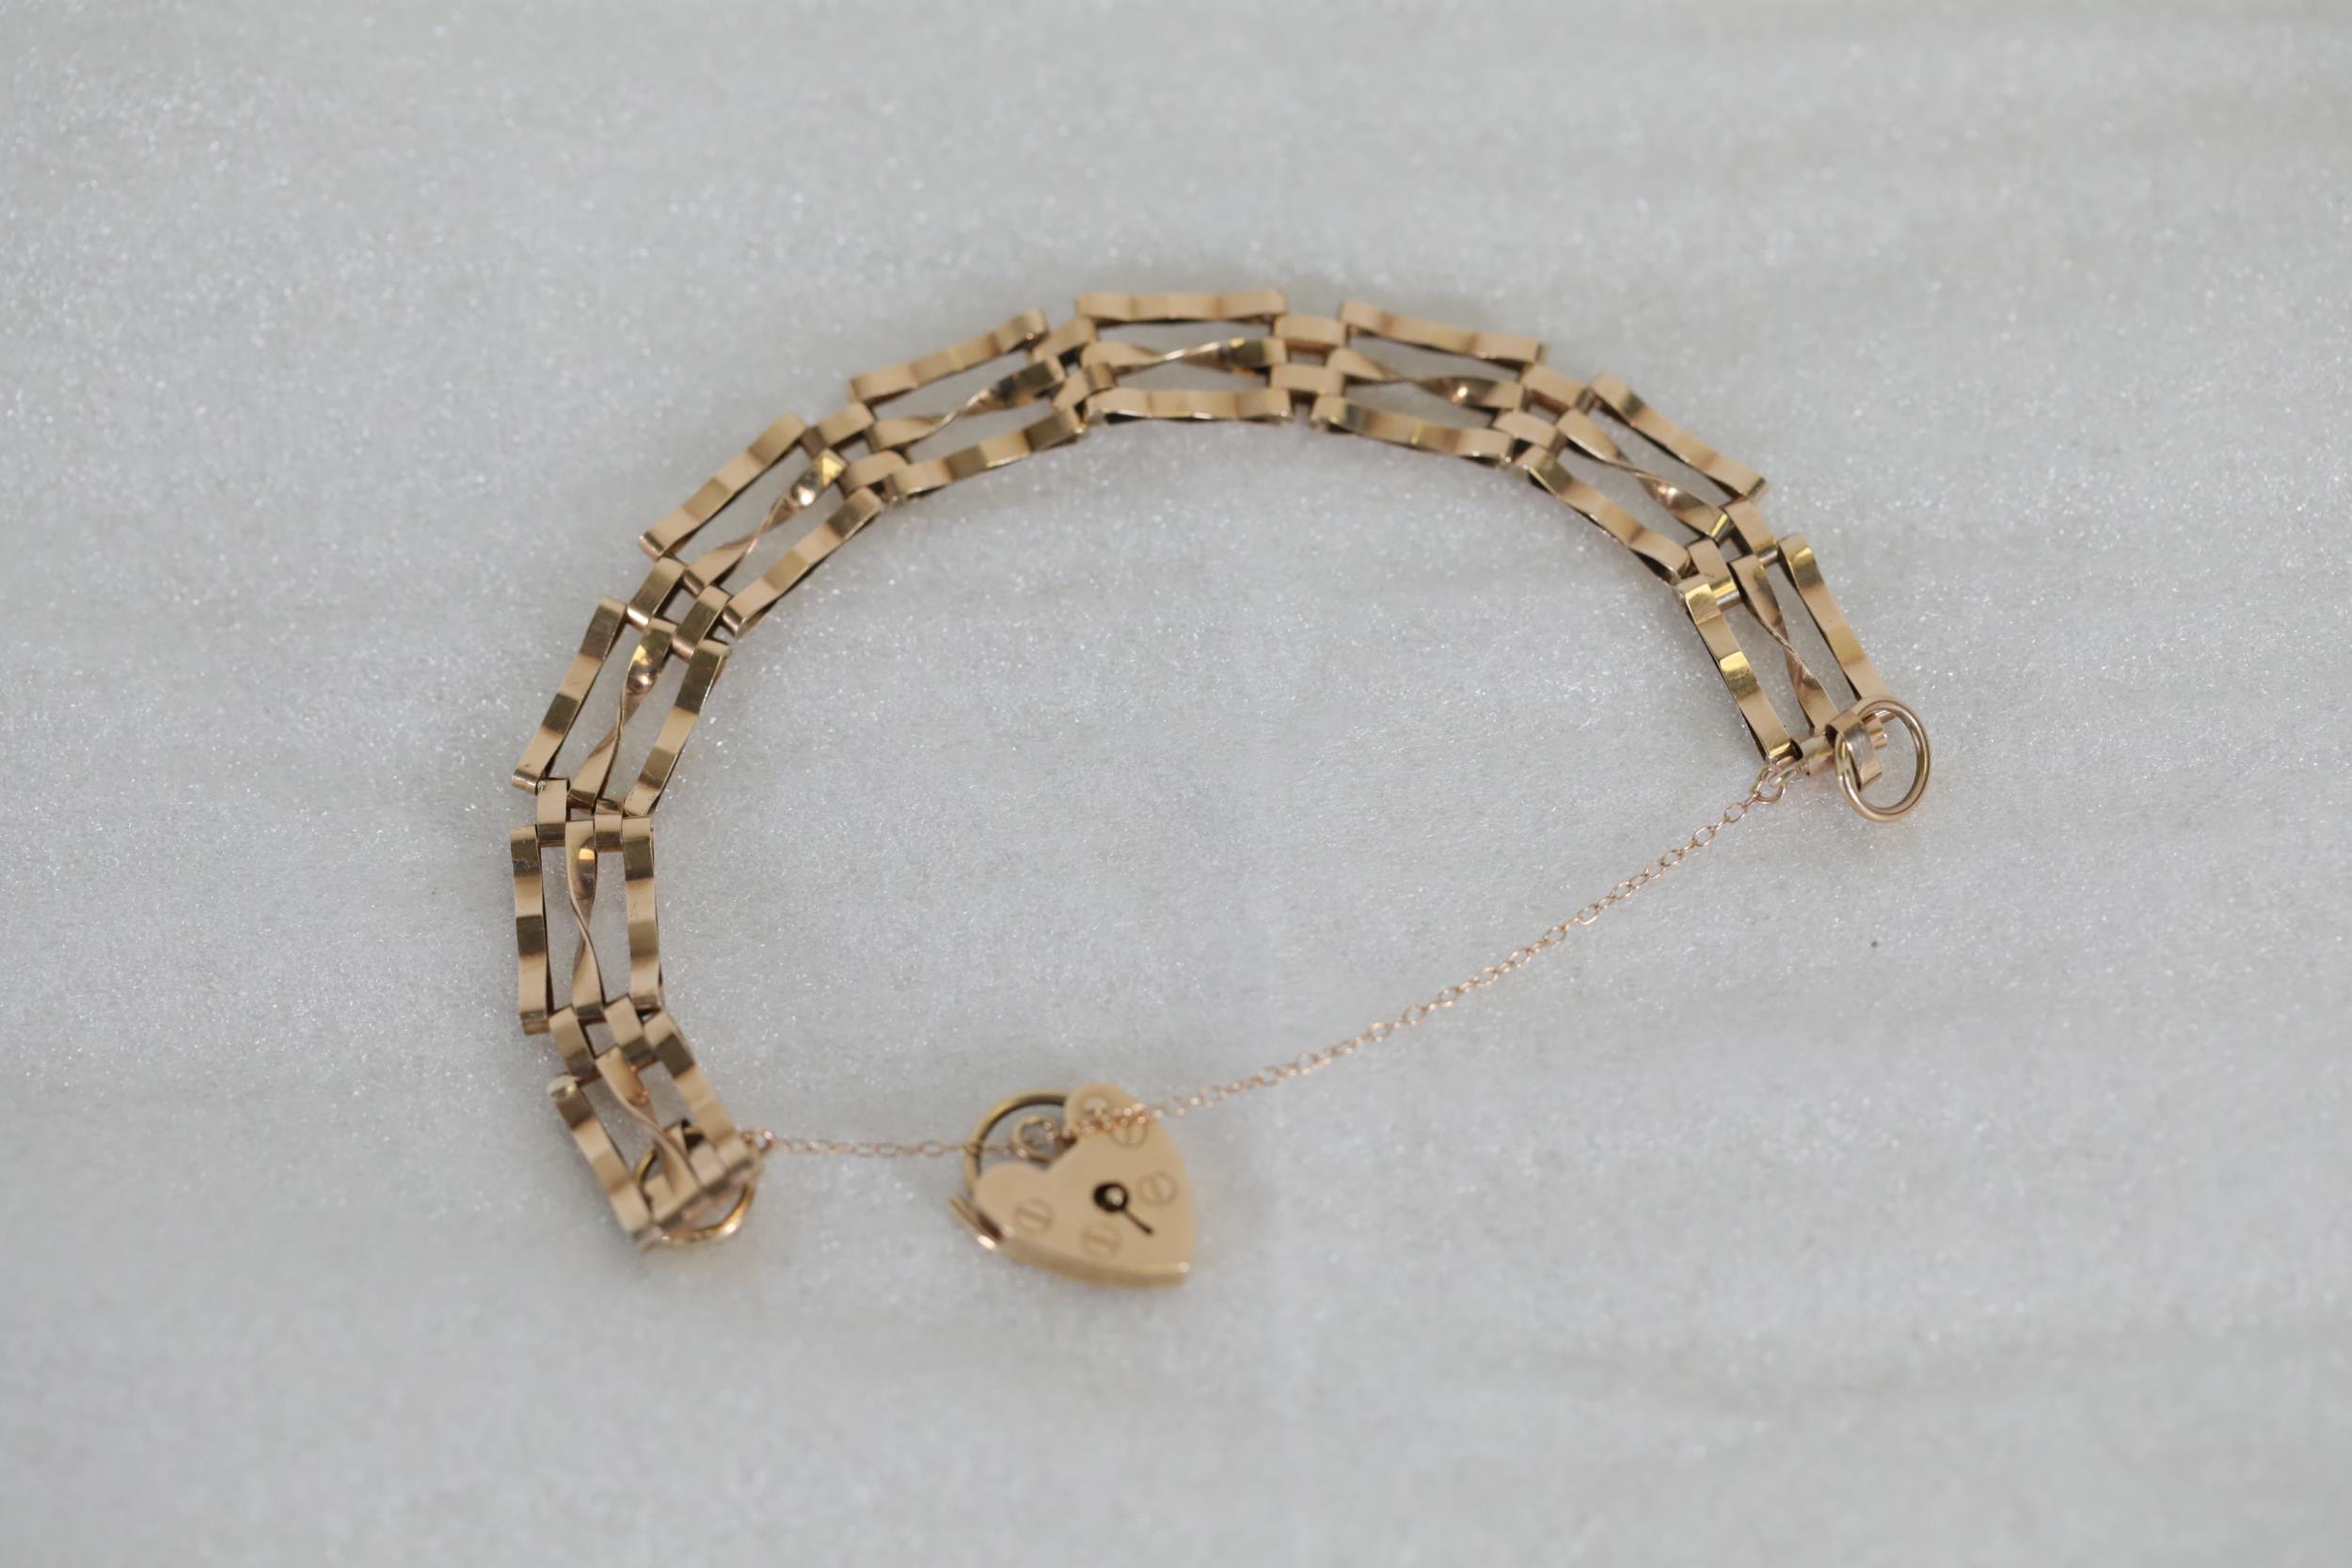 Lovely 9ct gold lockett and bracelett chain